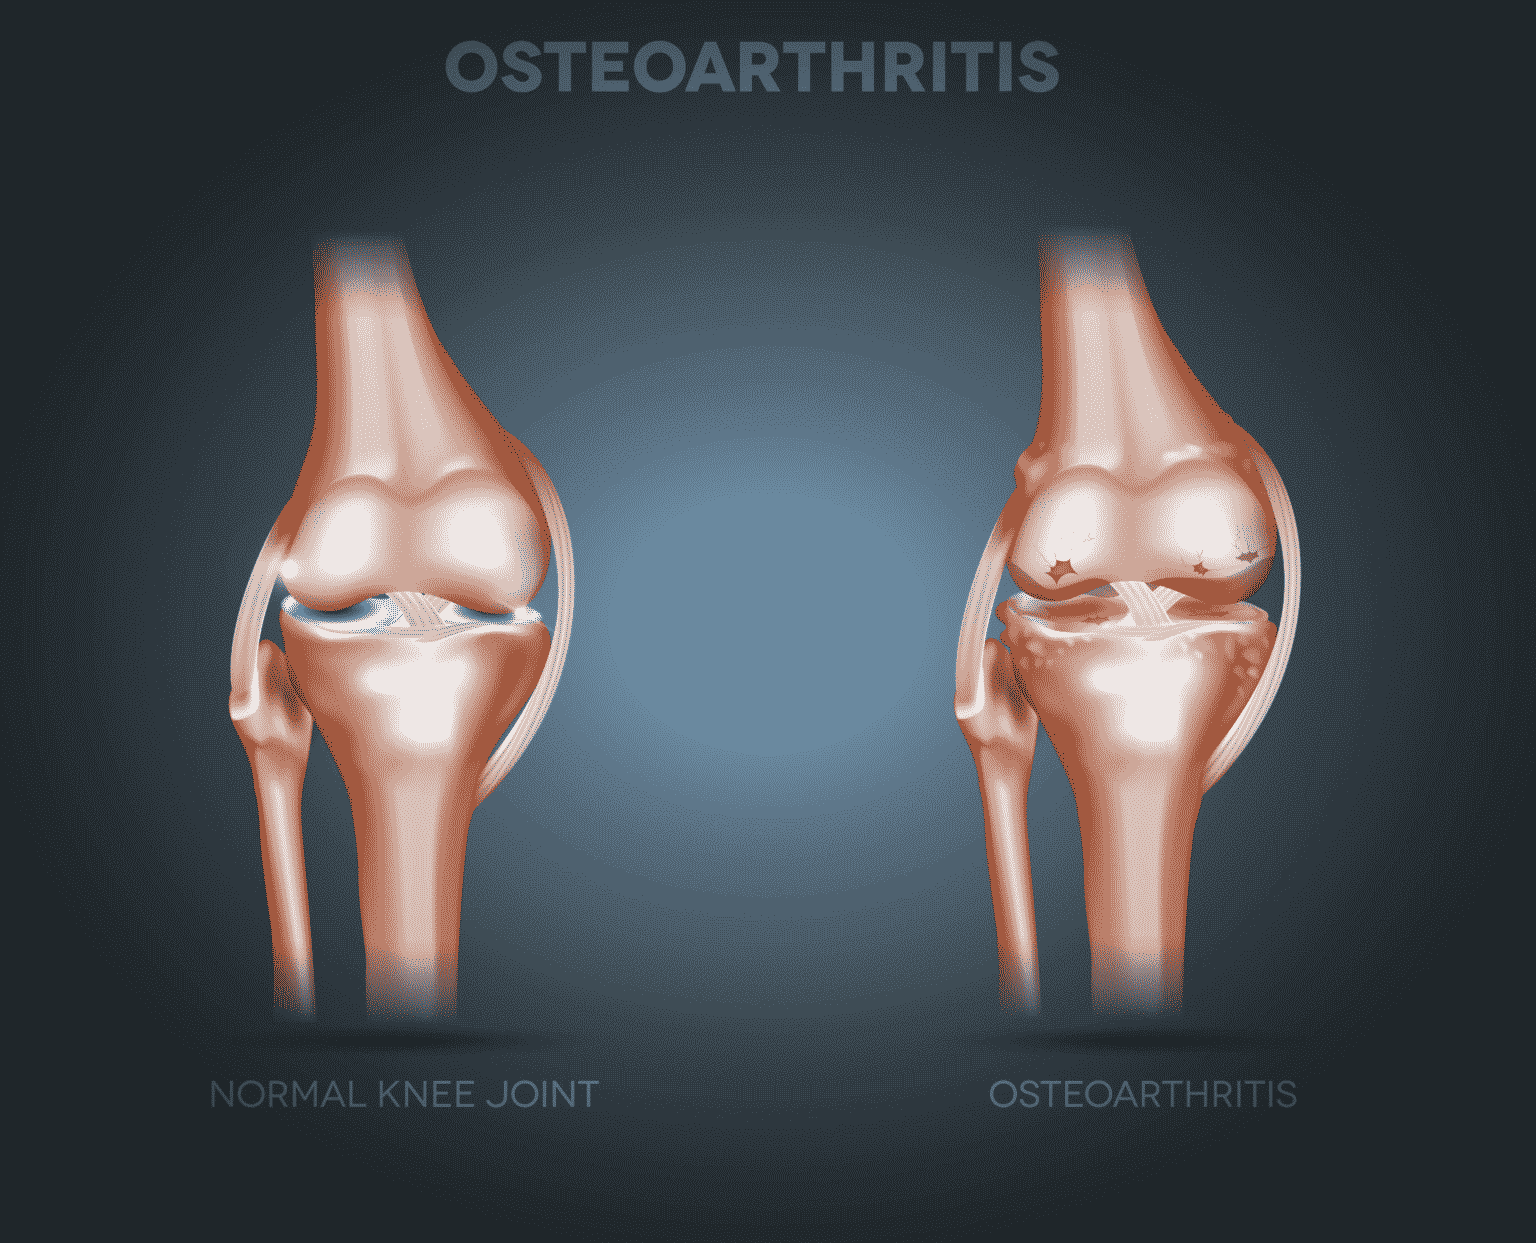 osteoarthritis in knee